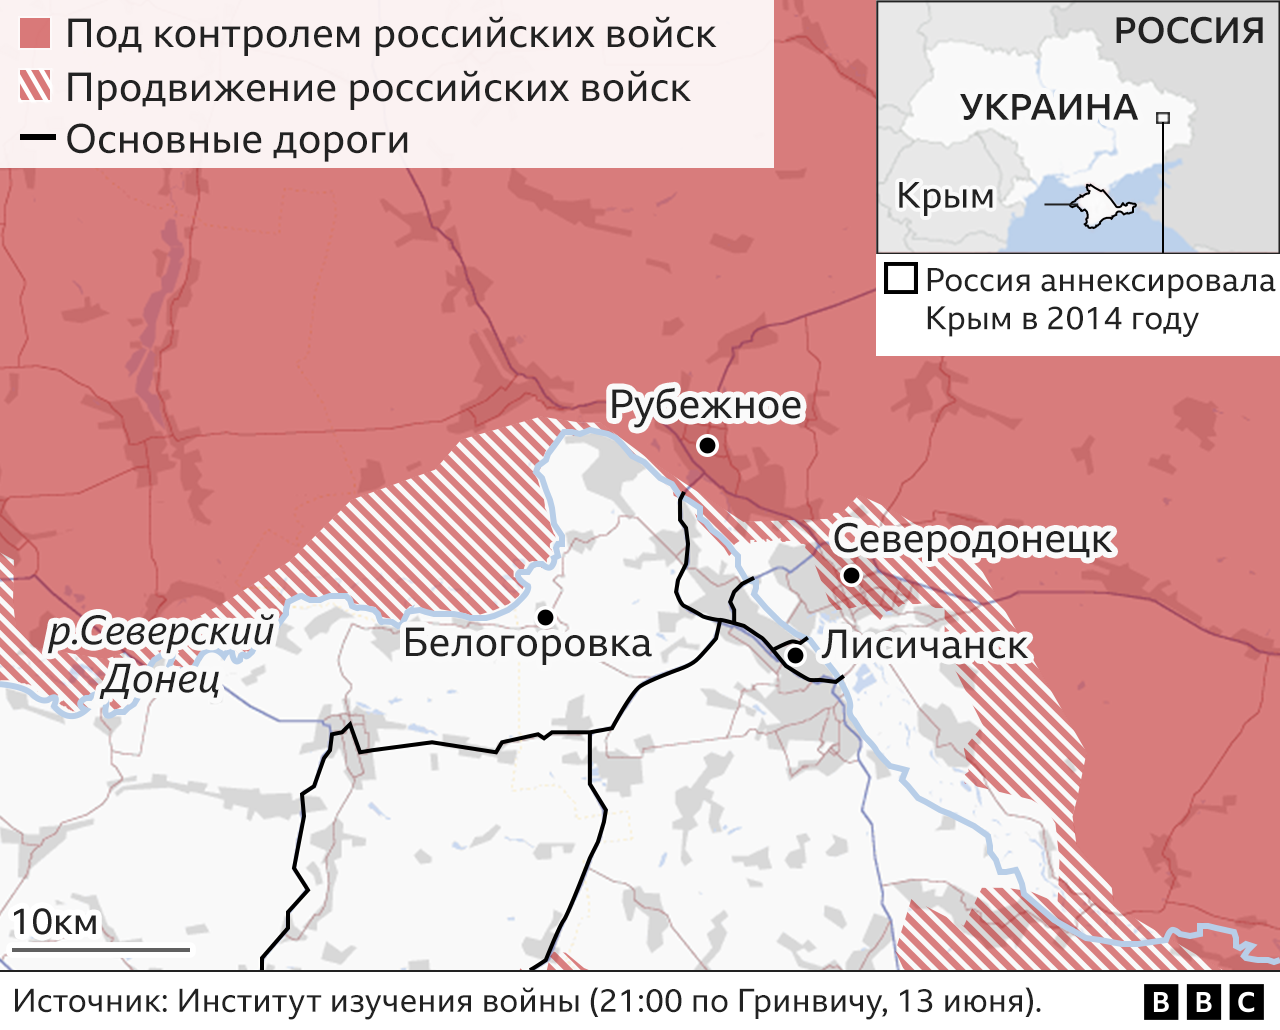 Карта боев в Донбассе